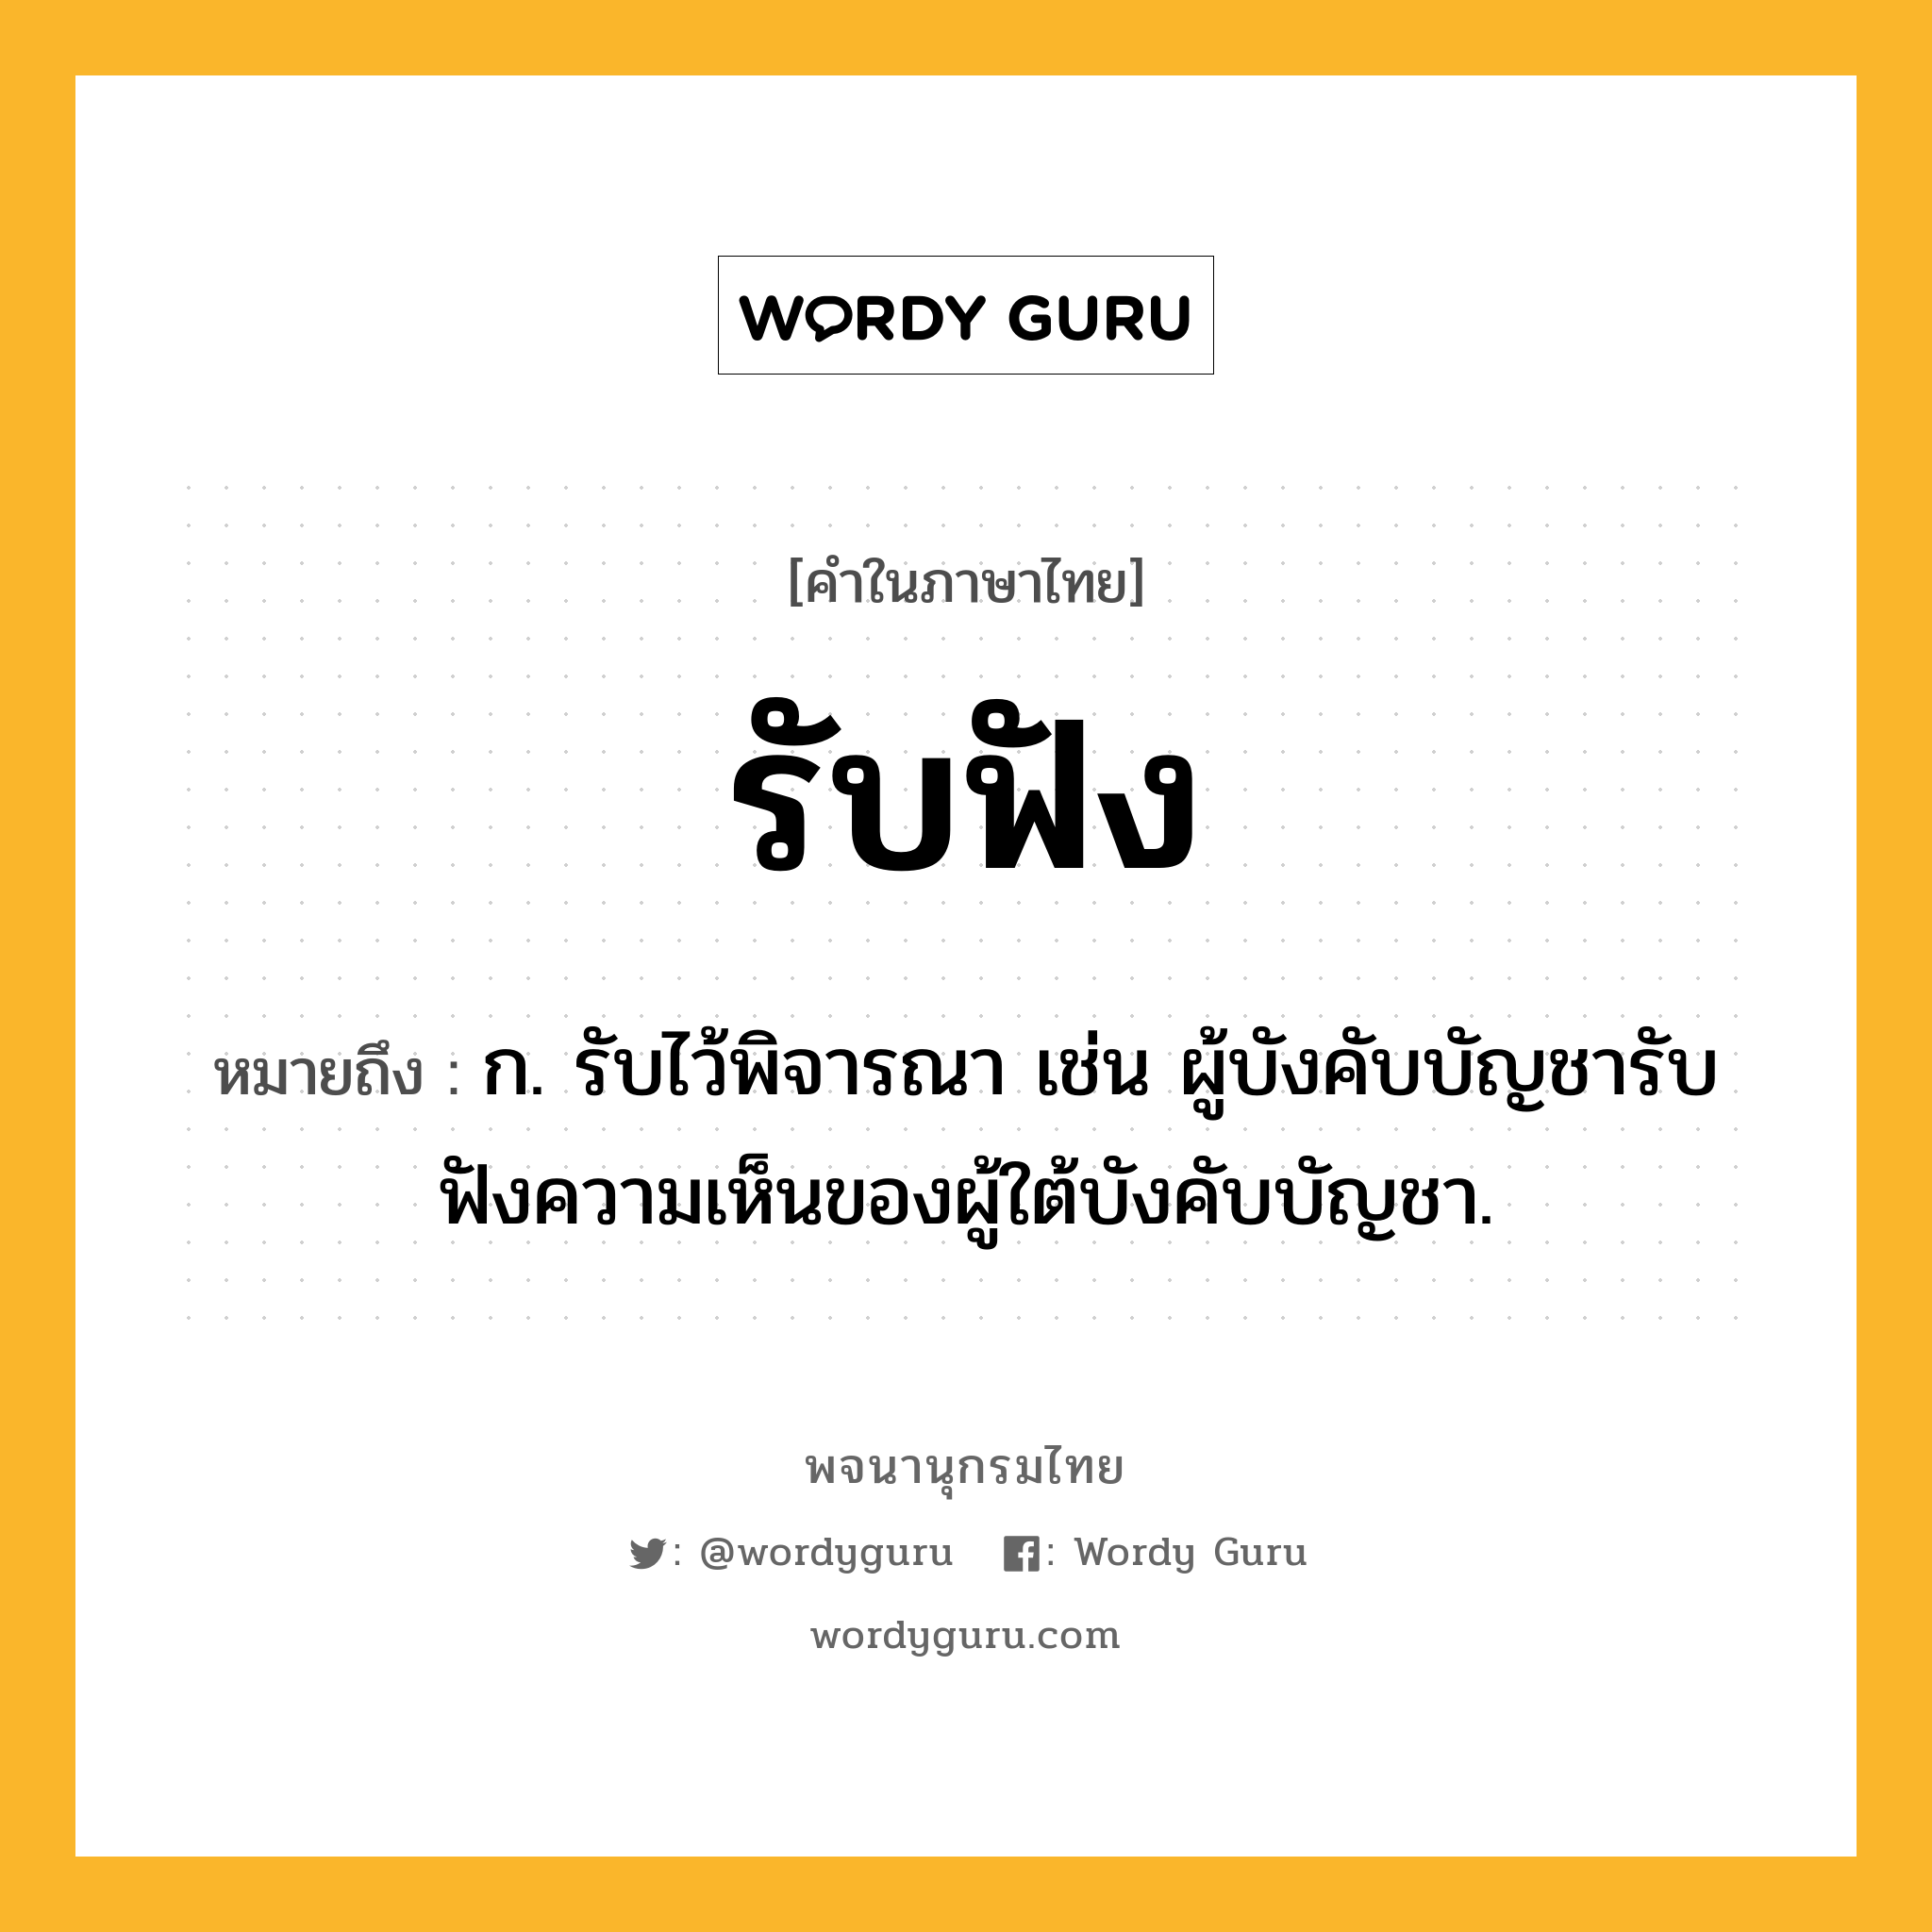 รับฟัง ความหมาย หมายถึงอะไร?, คำในภาษาไทย รับฟัง หมายถึง ก. รับไว้พิจารณา เช่น ผู้บังคับบัญชารับฟังความเห็นของผู้ใต้บังคับบัญชา.